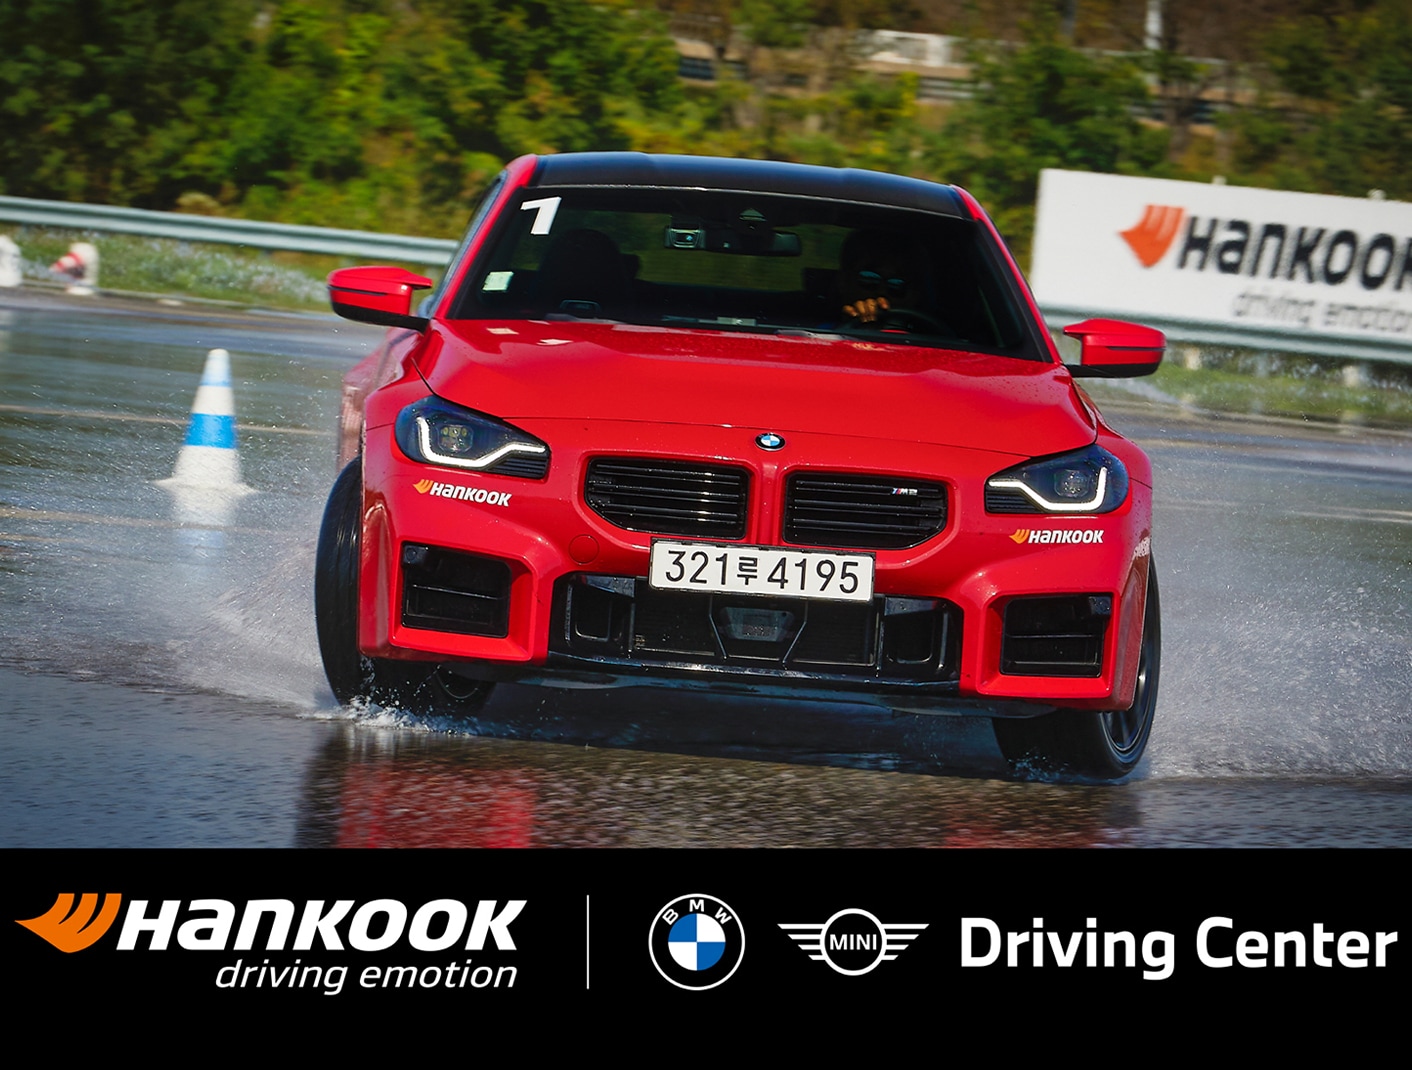 Hankook Tire celebra 10 años como proveedor exclusivo de llantas de alto rendimiento para el Centro de Conducción de BMW.